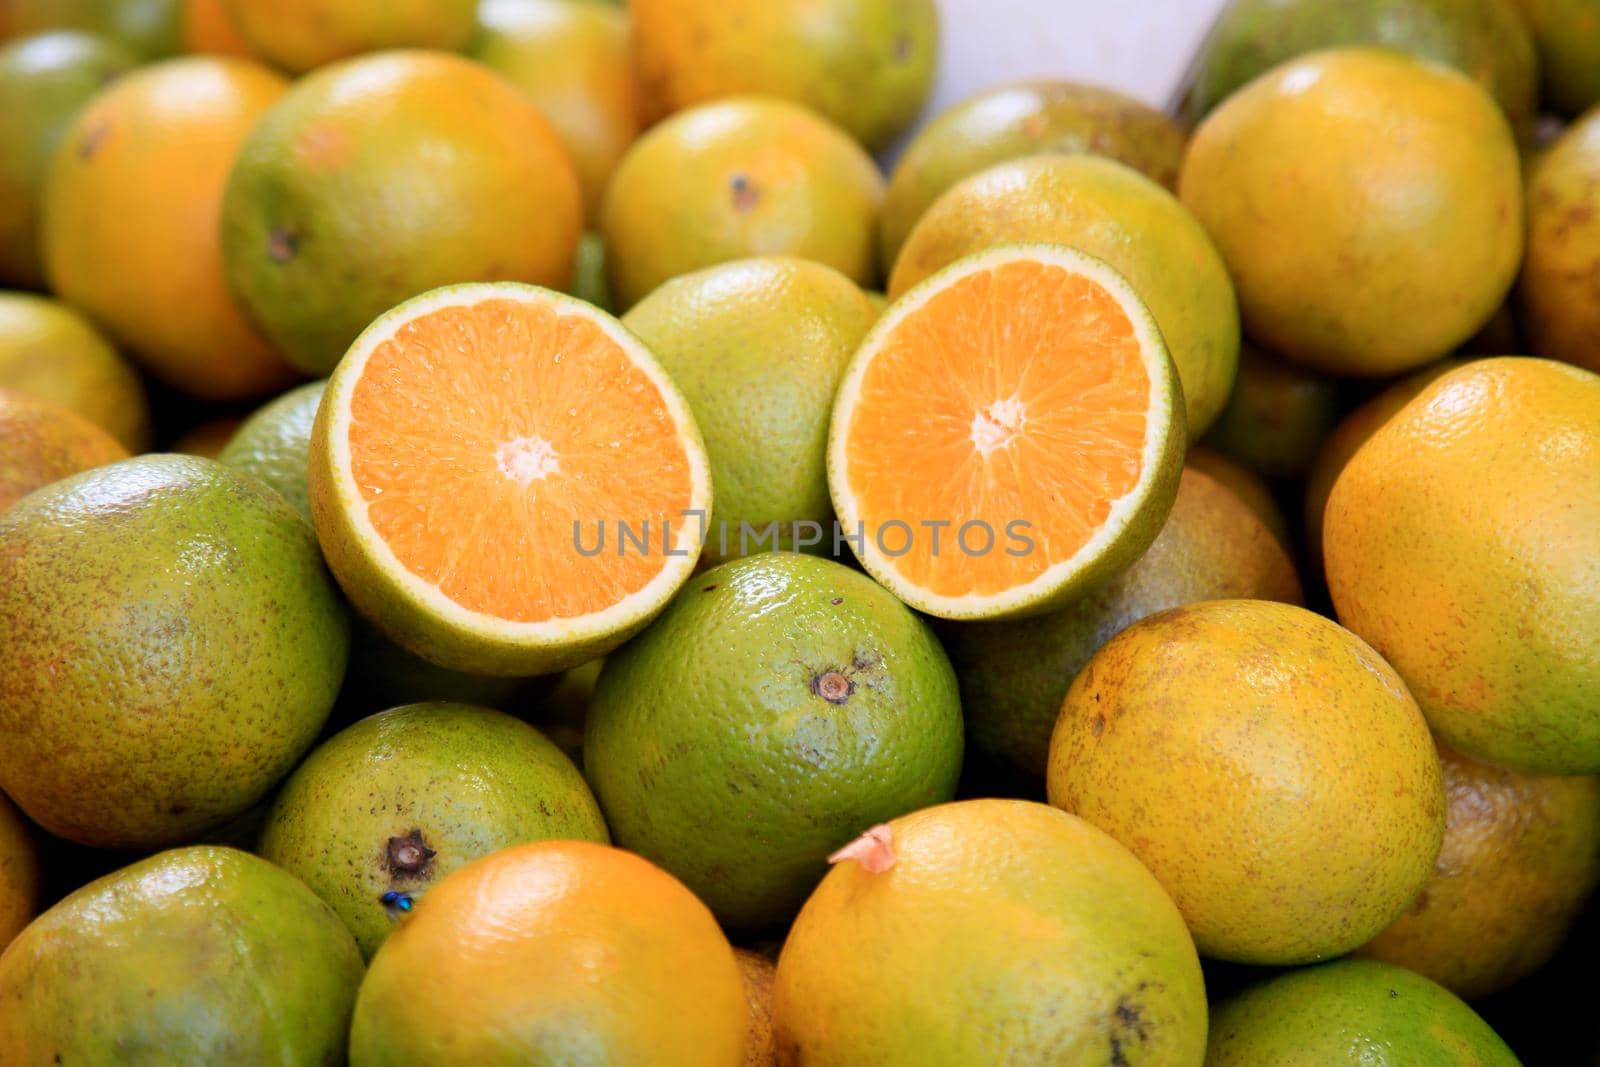 orange fruit in open market by joasouza